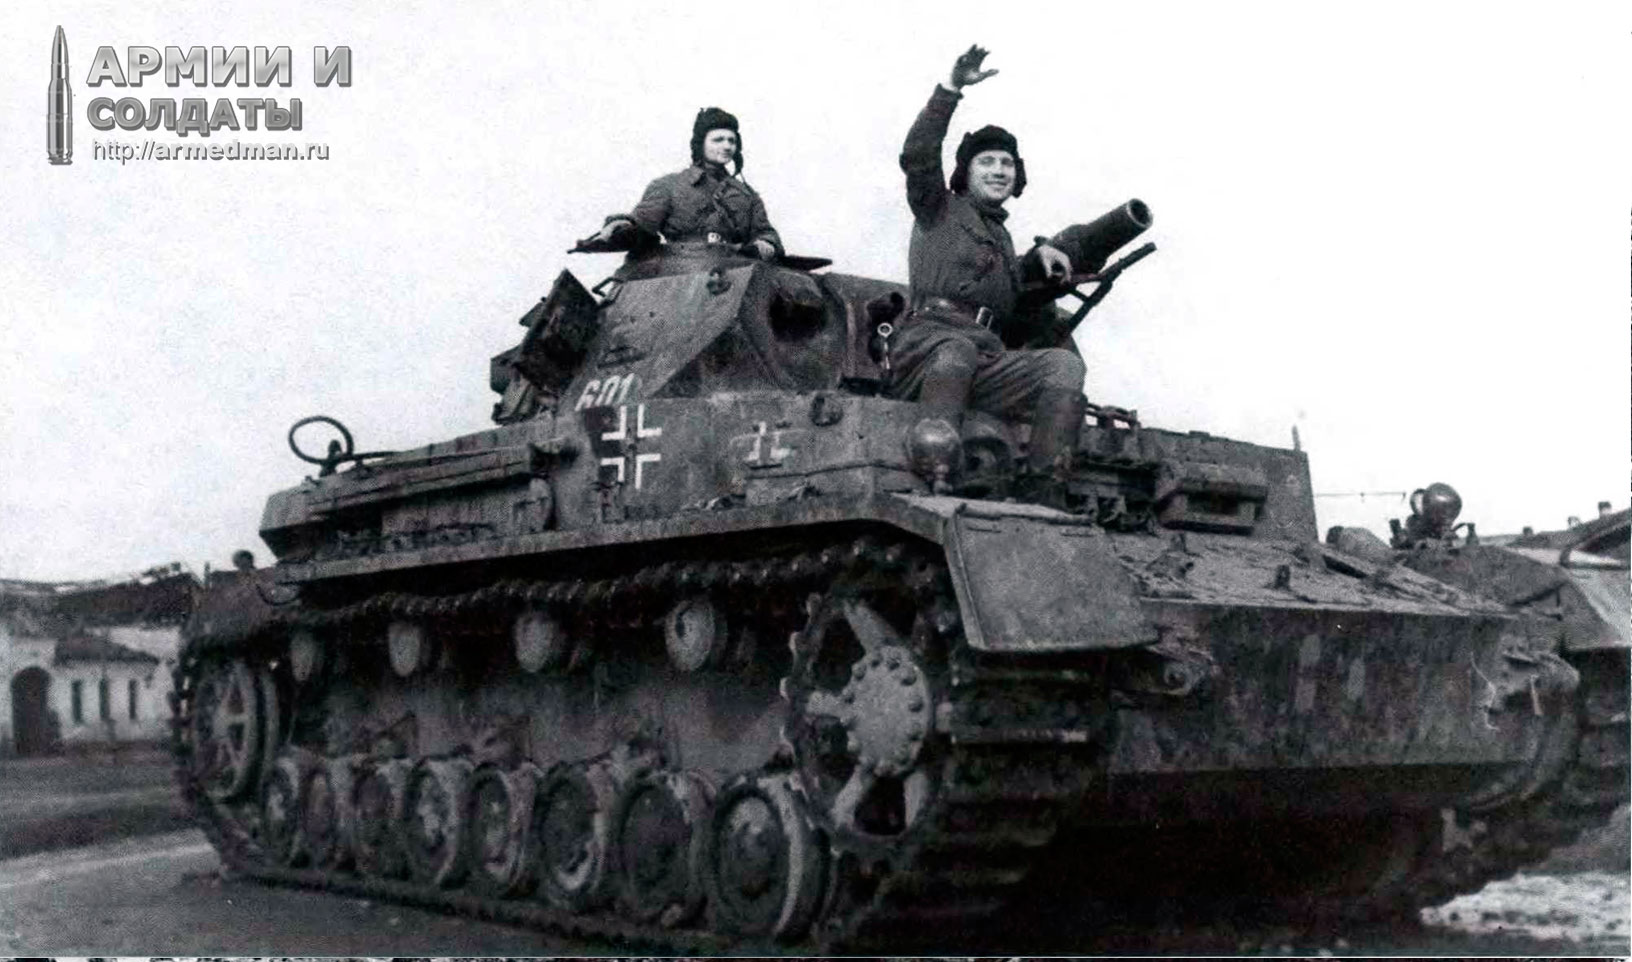 Pz-IV-Aust-F1-на-службе-в-Красной-Армии,-Северокавказский-фронт,-151-танковая-бригада,-весна-1943